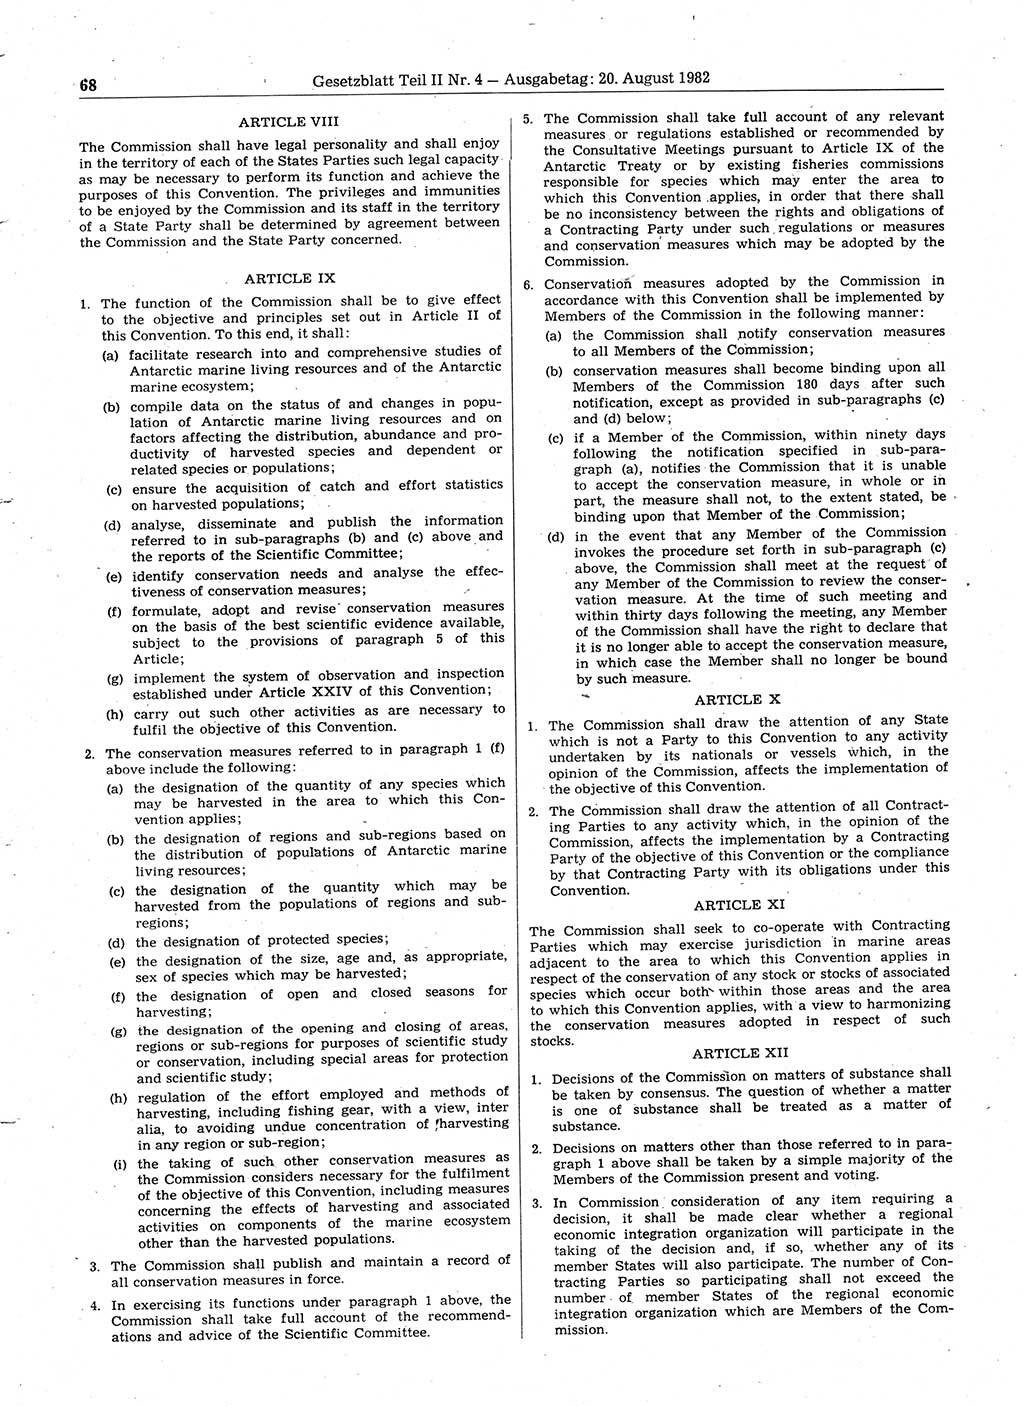 Gesetzblatt (GBl.) der Deutschen Demokratischen Republik (DDR) Teil ⅠⅠ 1982, Seite 68 (GBl. DDR ⅠⅠ 1982, S. 68)